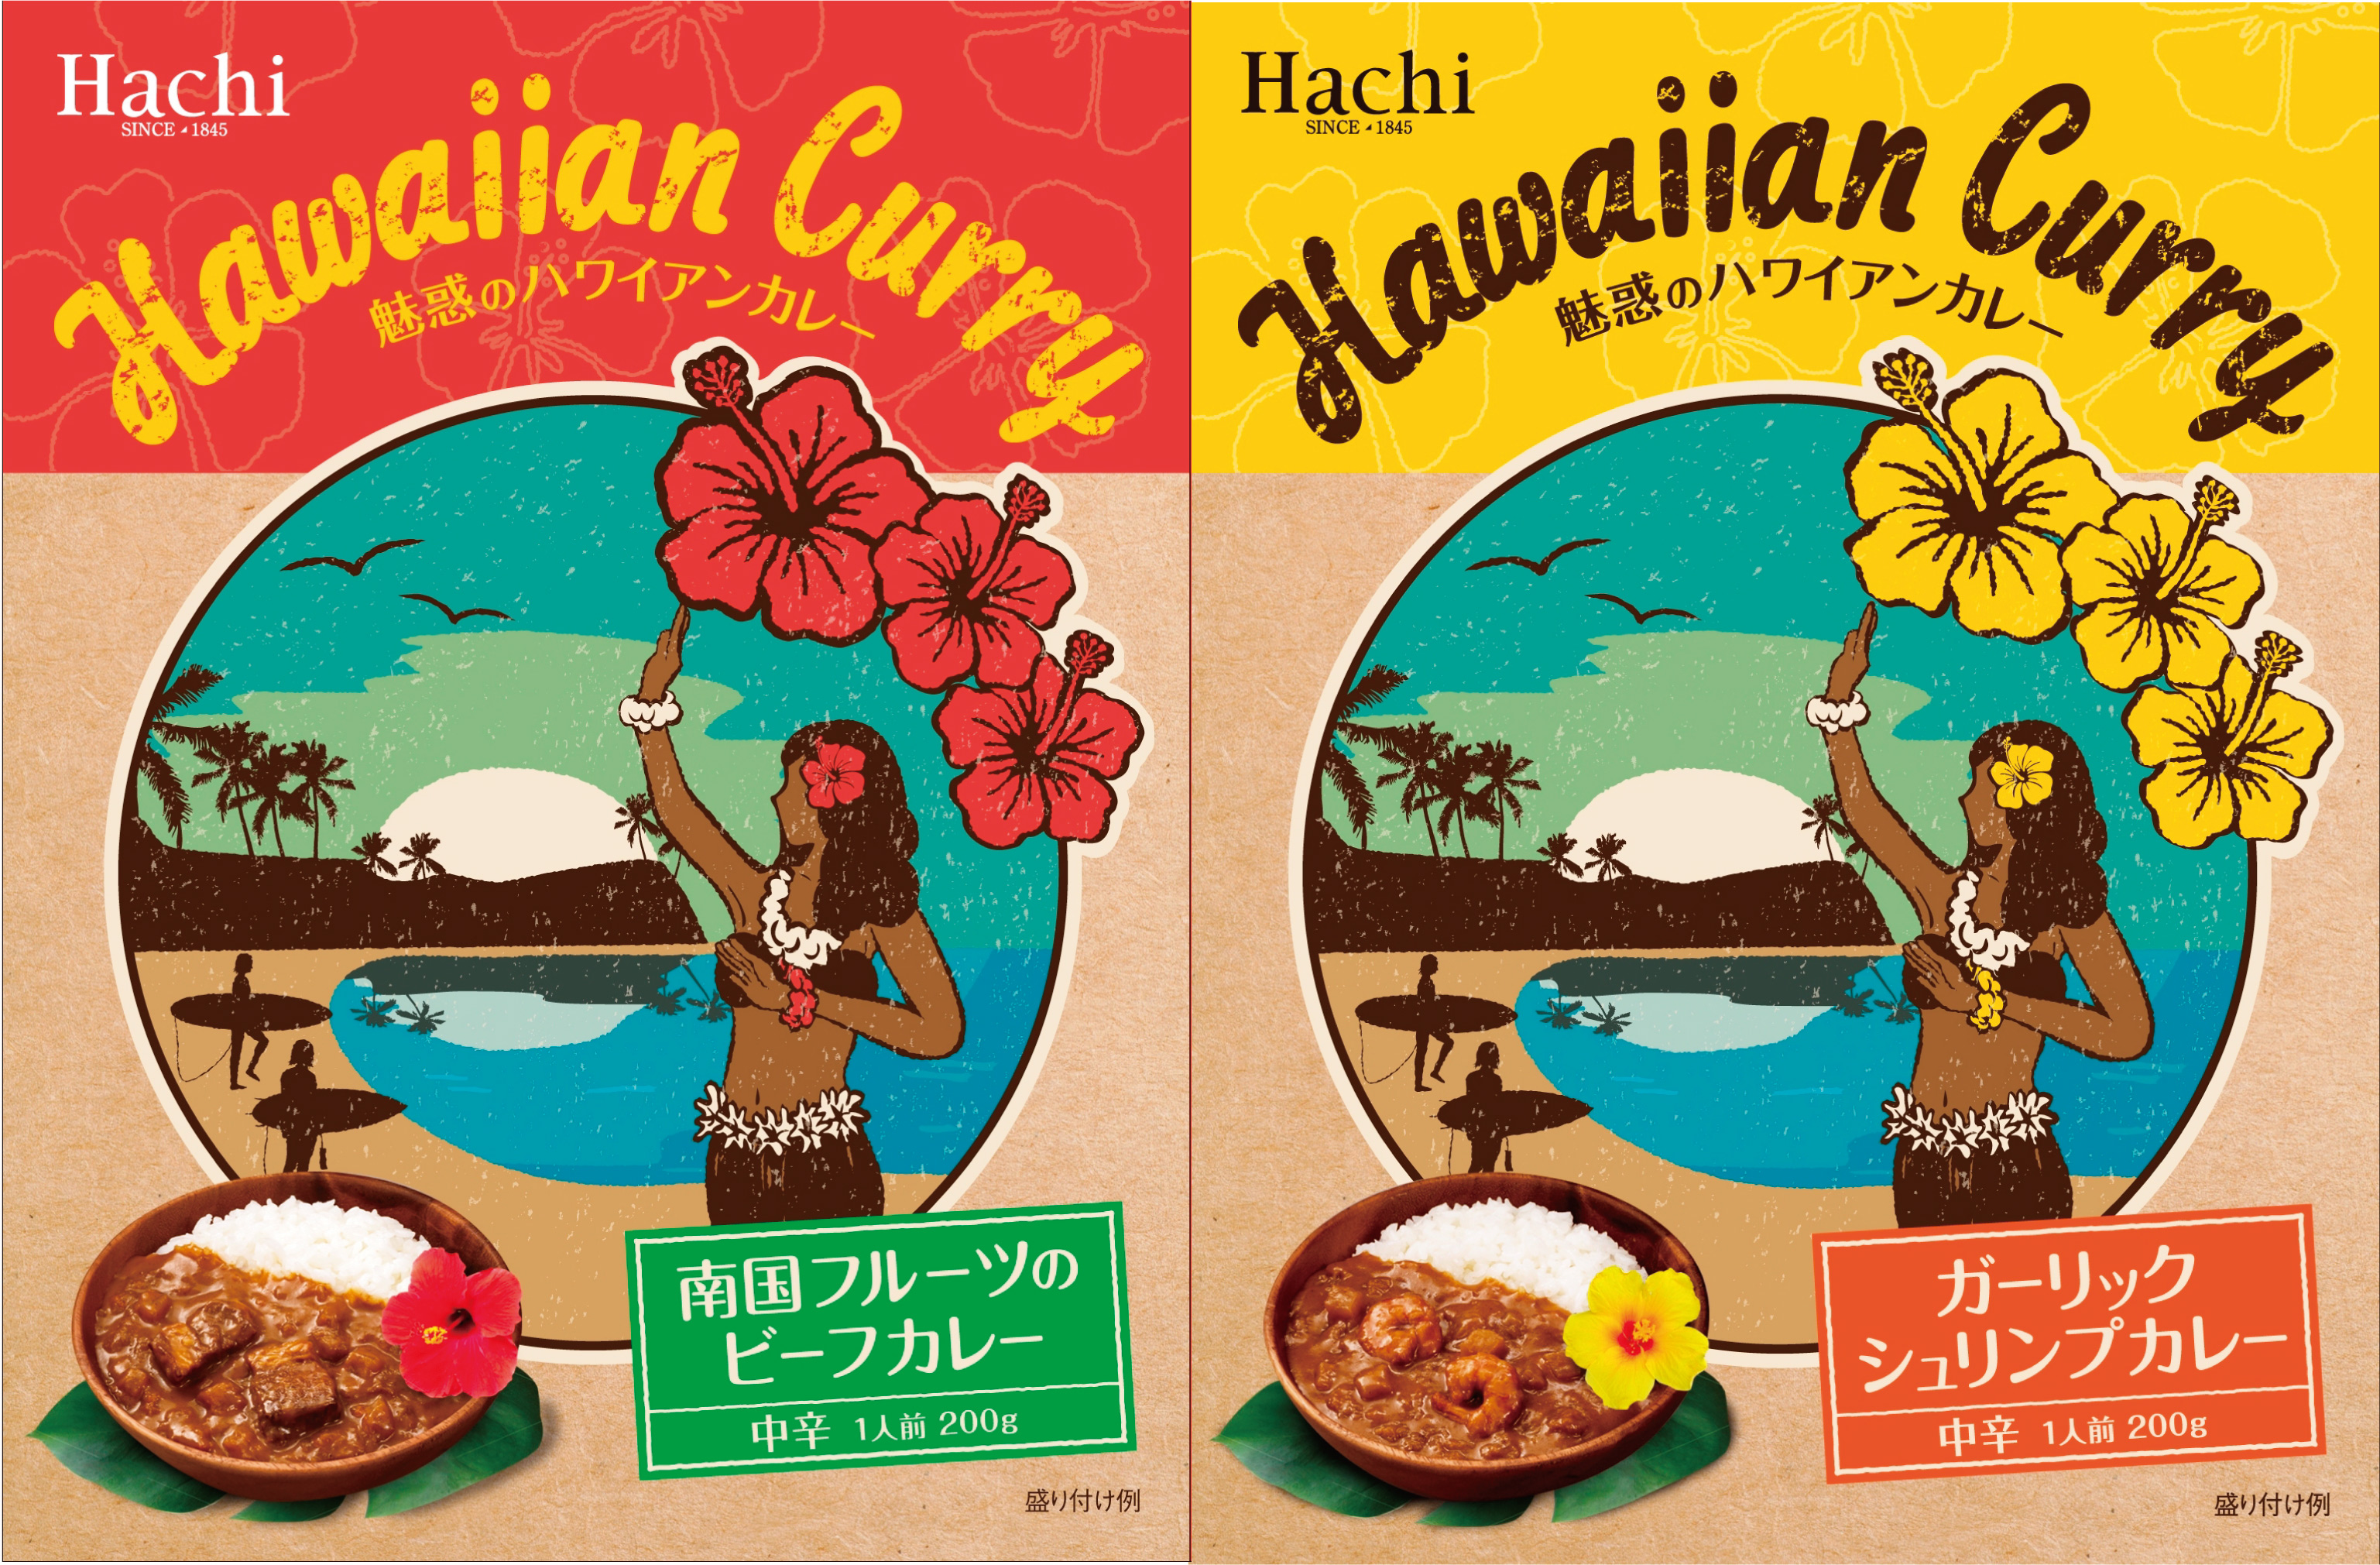 ハワイ好きが作ったハワイを感じるカレー ガーリックシュリンプカレー 南国フルーツのビーフカレー 2種類を2月22日新発売 ハチ食品 Hachi の レトルトカレー レトルト食品